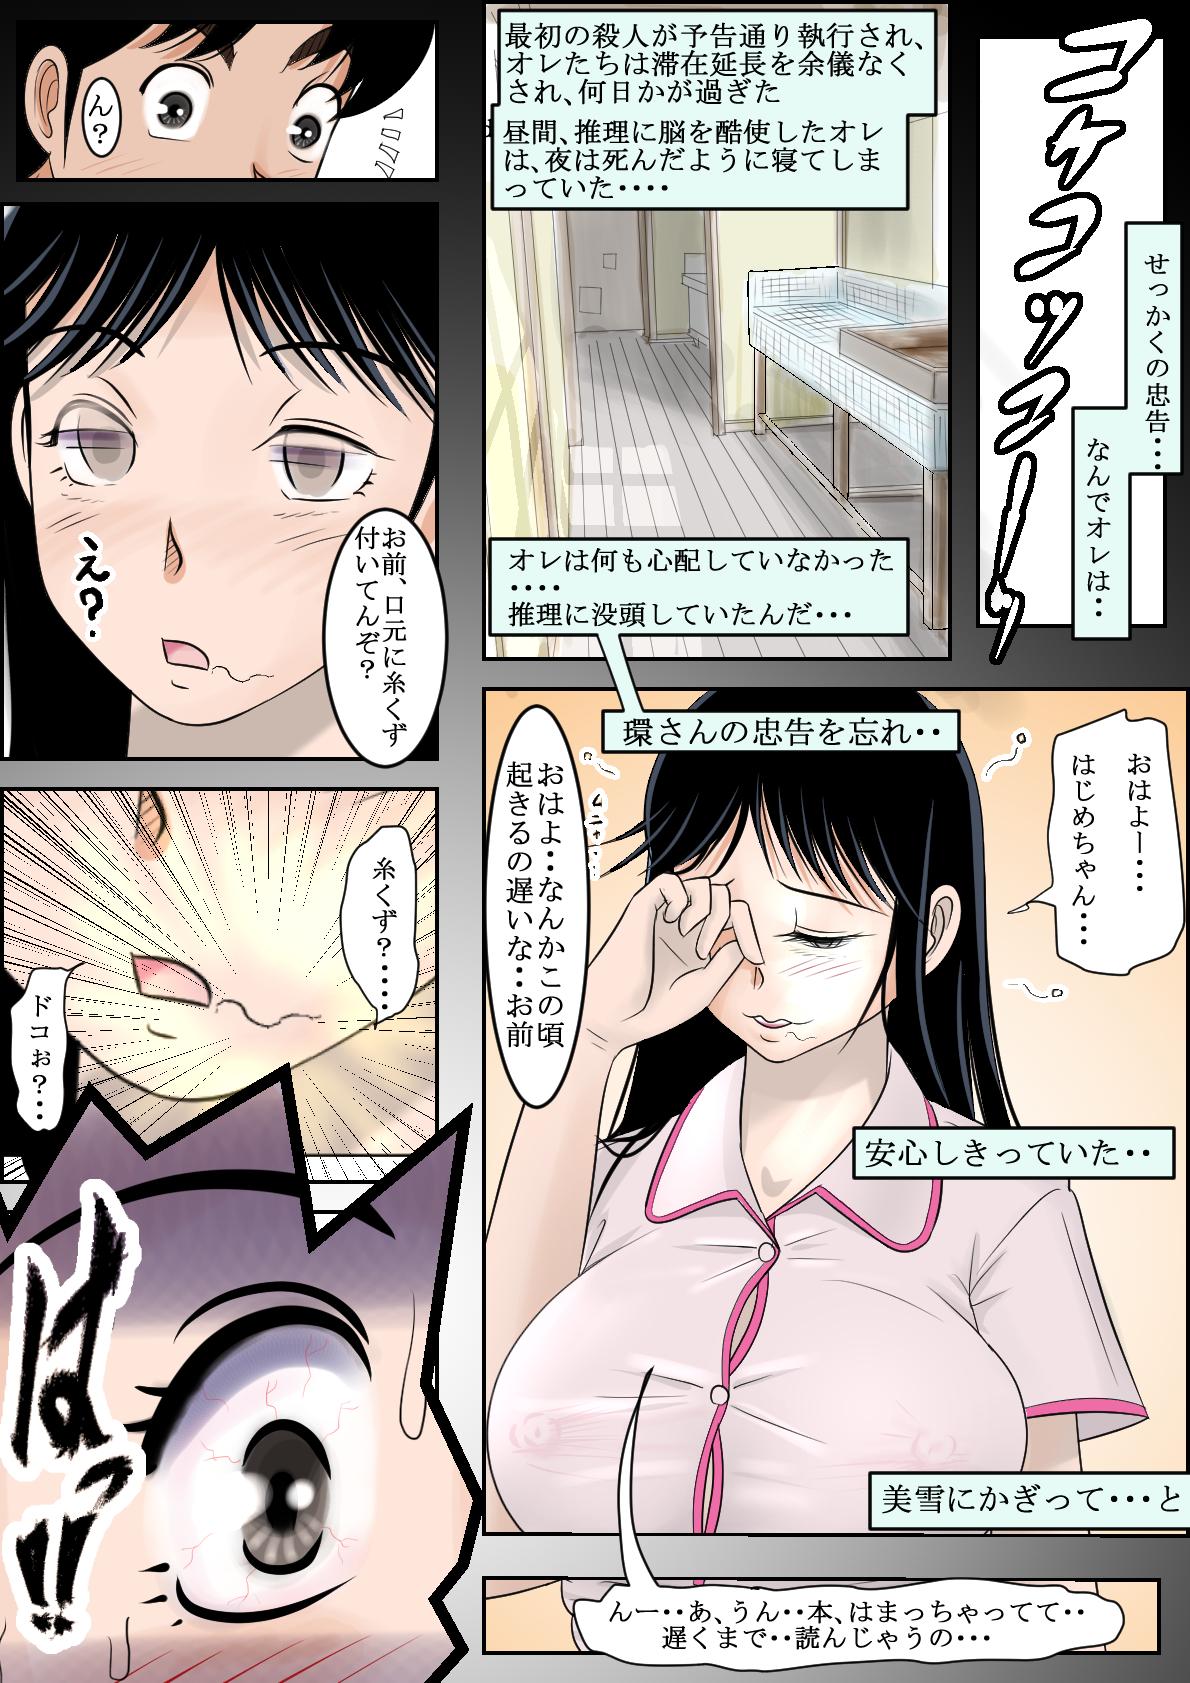 Behind Seisokei Bitch no Jikenbo - Kindaichi shounen no jikenbo Retro - Page 9